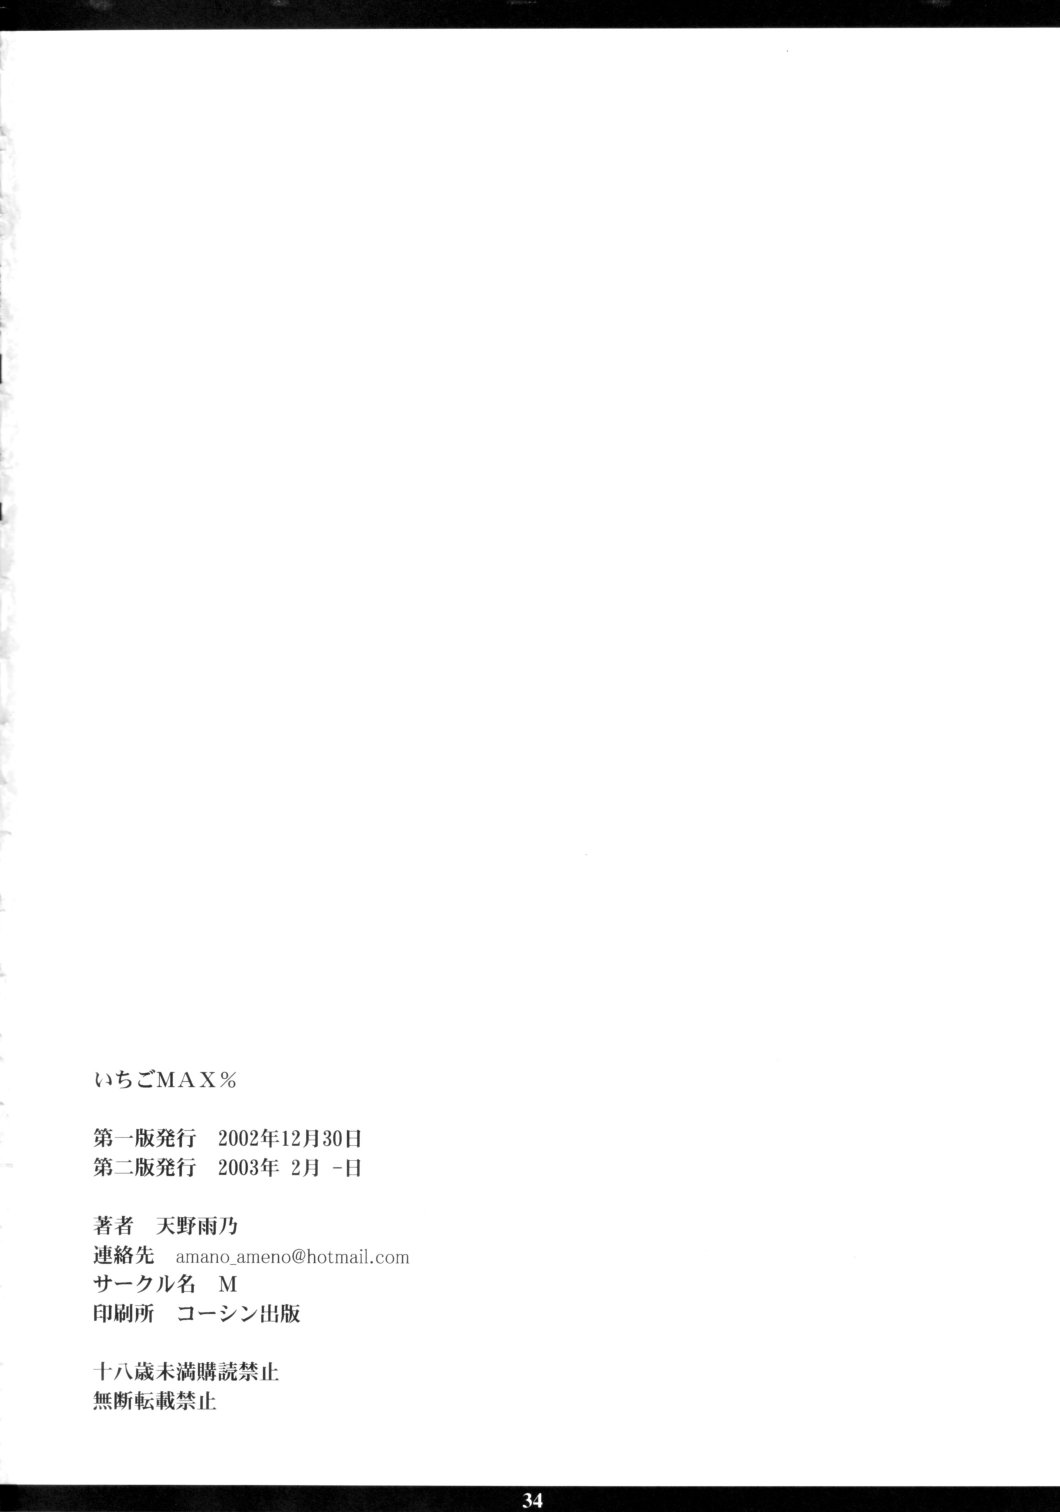 (C63) [M (Amano Ameno)] Ichigo MAX% (Ichigo 100%) page 33 full